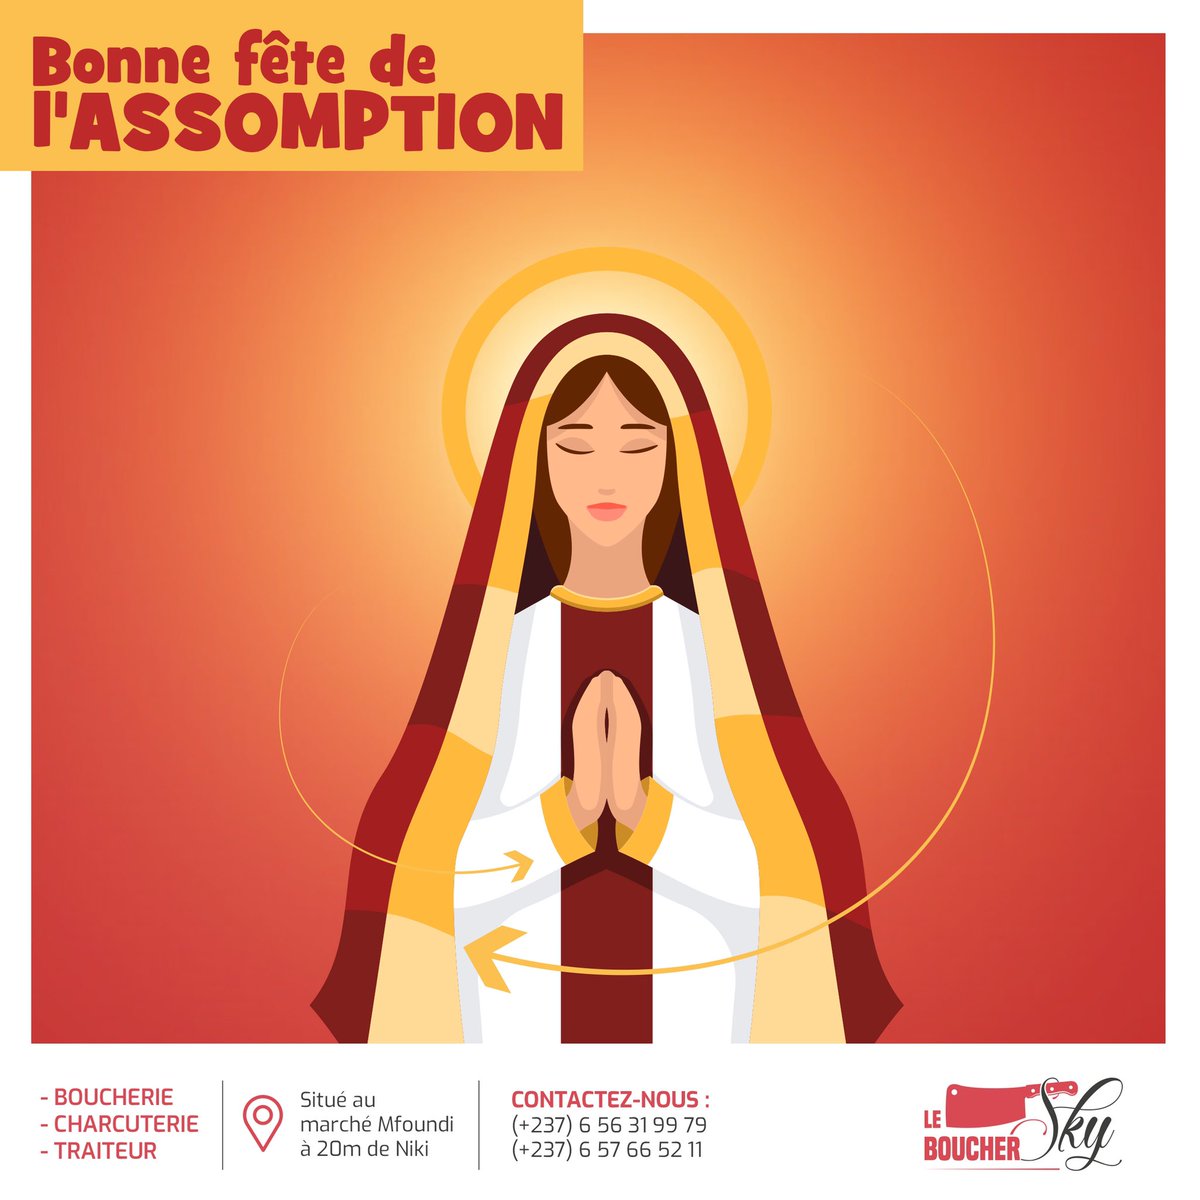 [✨ASSOMPTION DE LA VIERGE MARIE 🙏🏾🙏🏾 🌟]

Joyeuse fête de l'assomption à toute la communauté chrétienne 💫🙏🏾

 #Assomption #Marie #eglisecatholique #LeBoucherSky